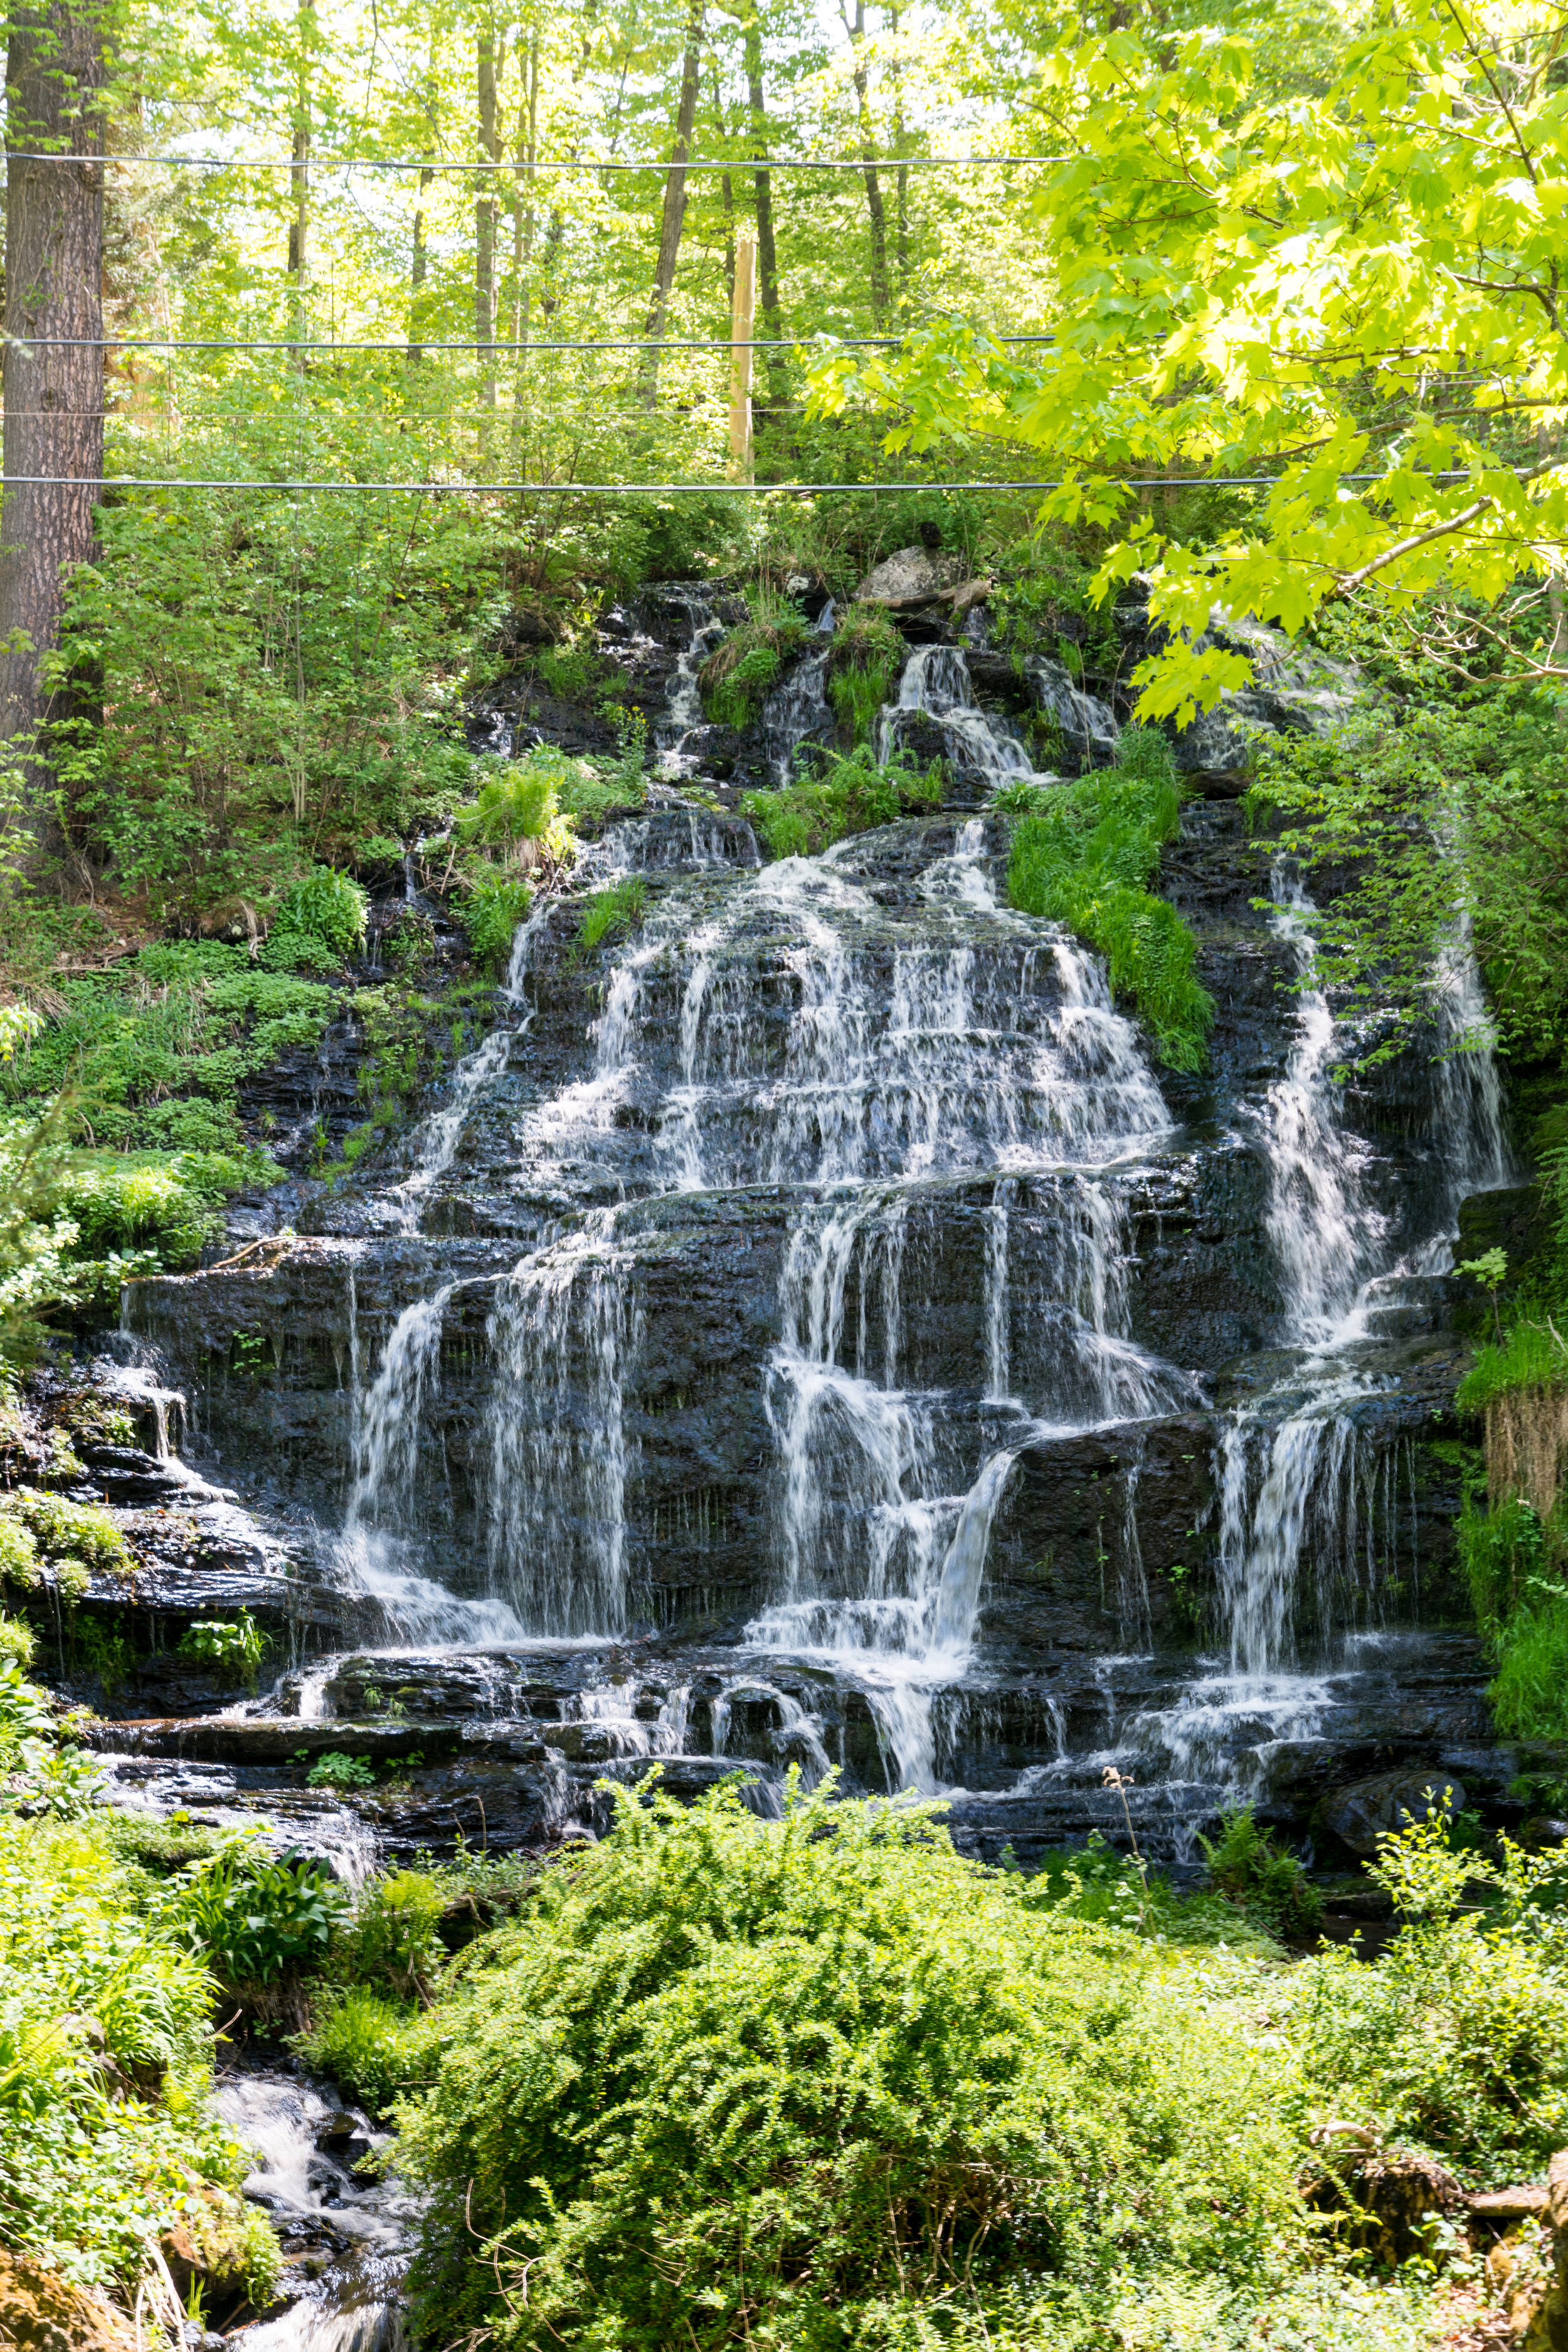 Slatestone Brook Falls